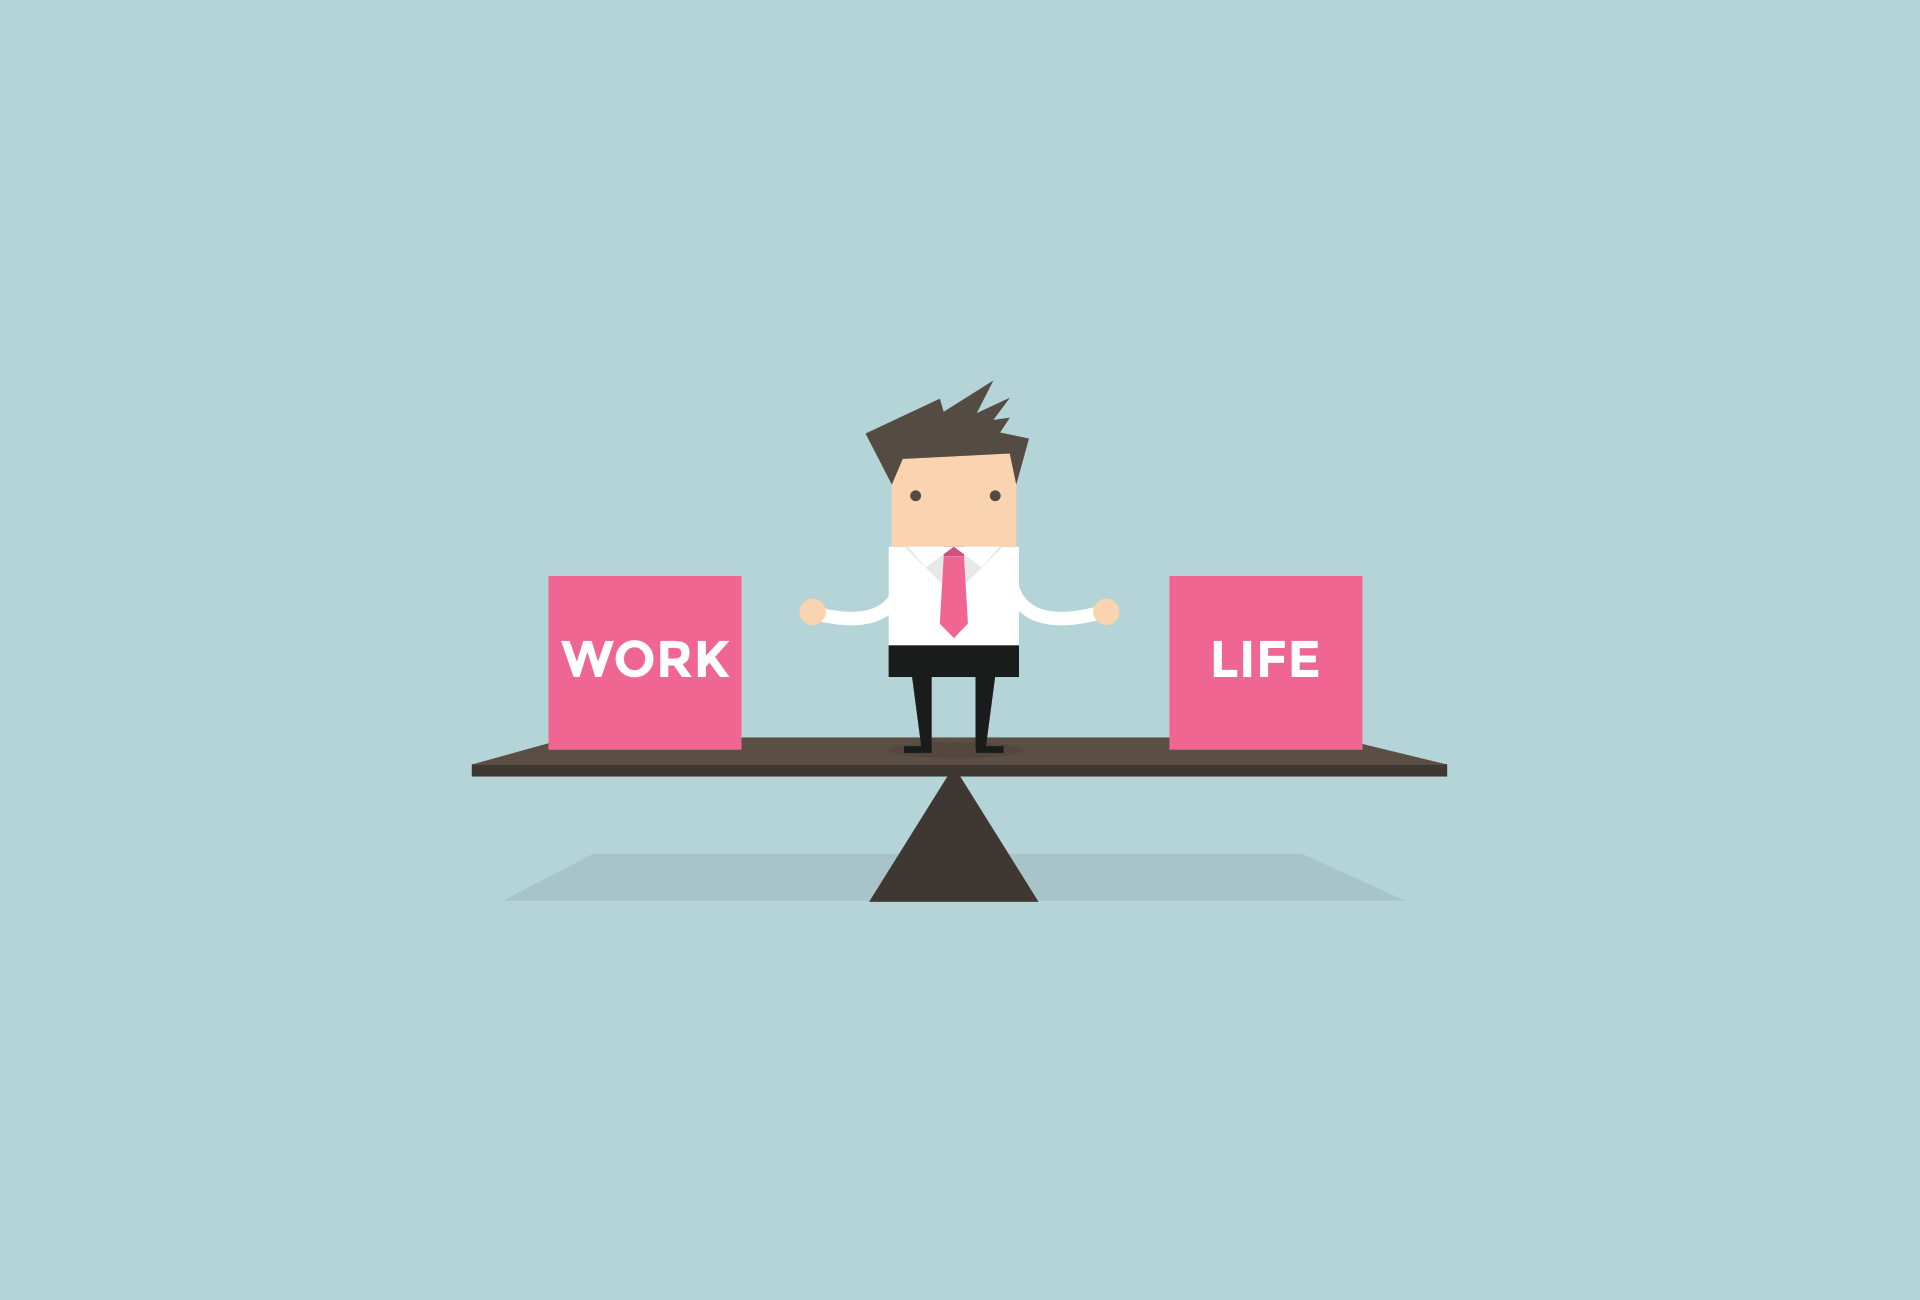 Working life ответы. Work Life Balance вектор. Баланс между работой и жизнью. Work Life Balance картинки. Work Life Balance клипарт.